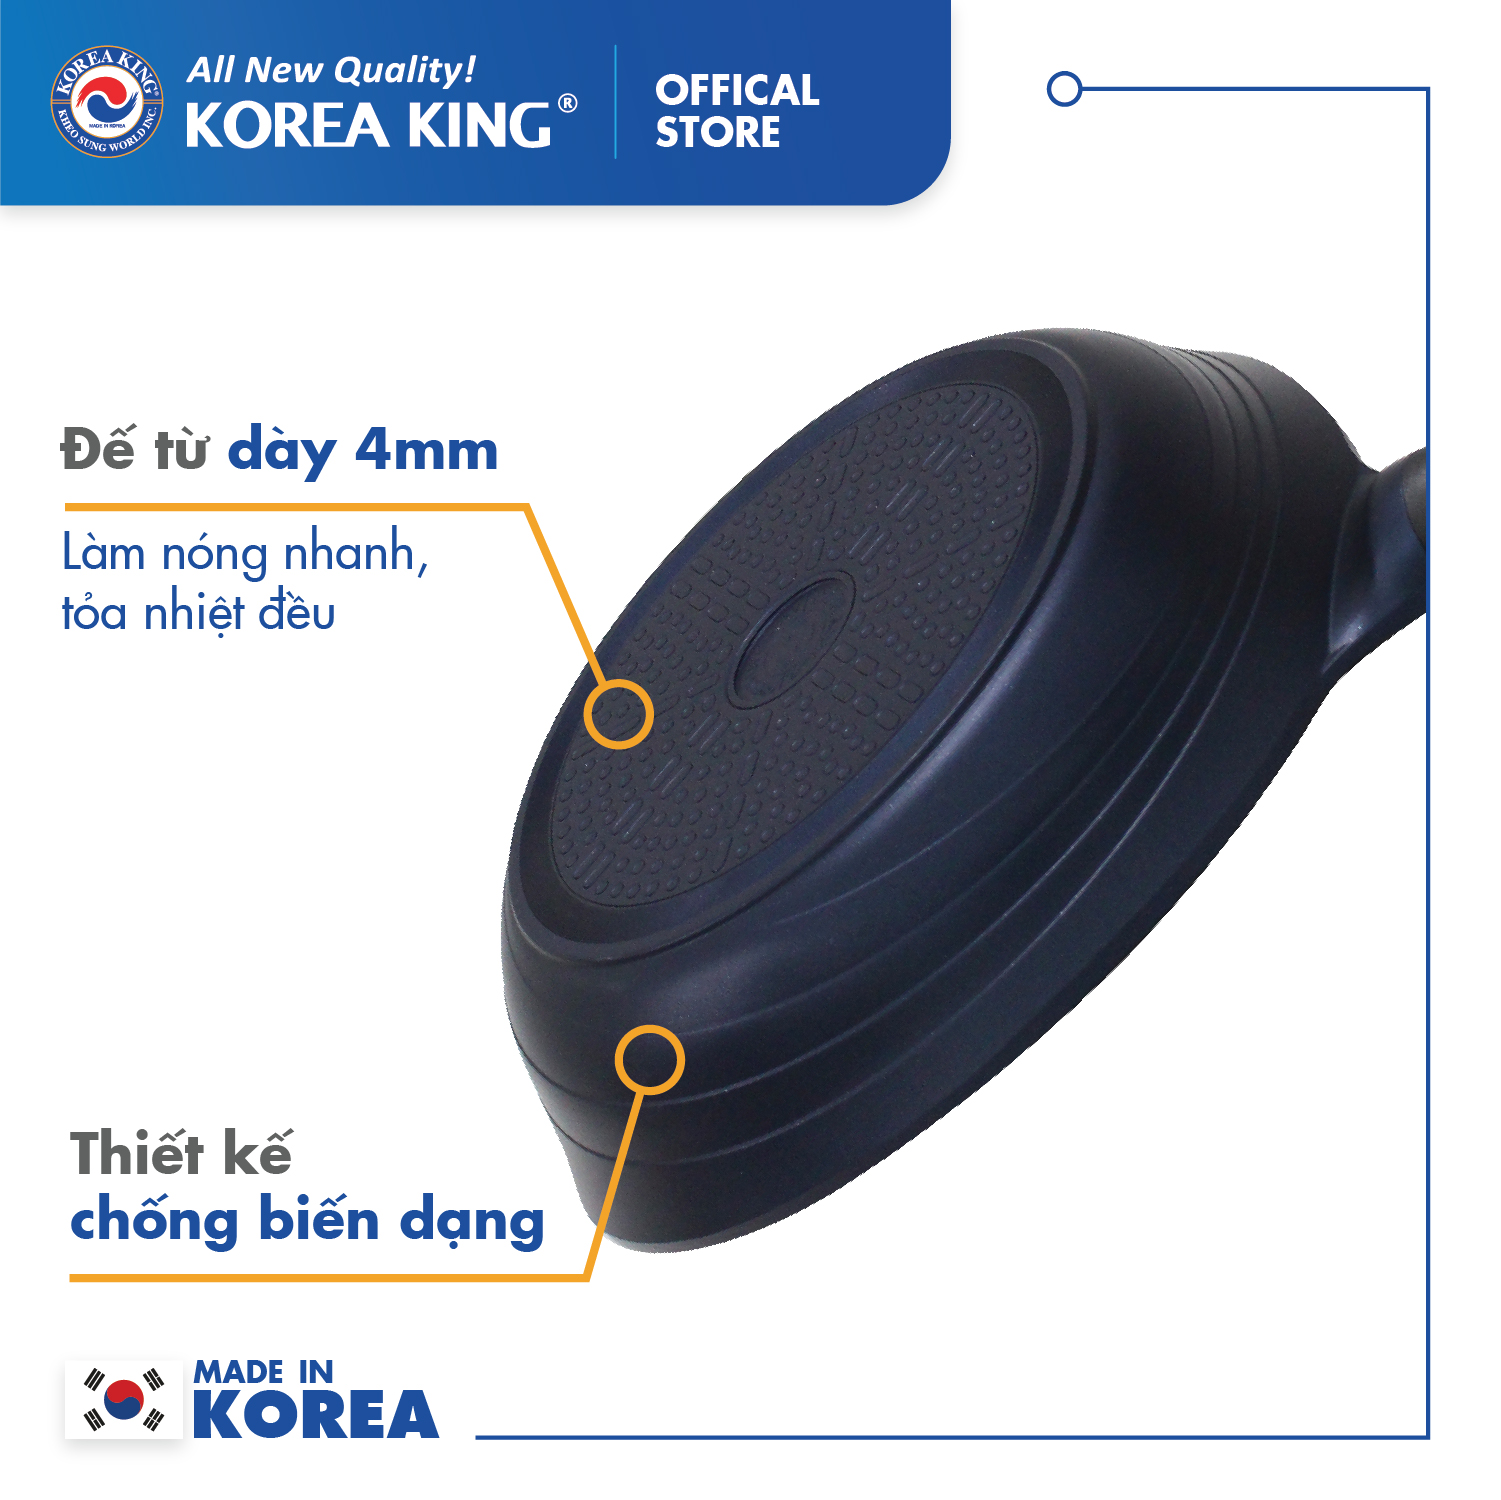 Combo 2 chảo sâu, cạn Colormic Korea King (1 chảo cạn 30cm và 1 chảo sâu 24cm)-Hàng chính hãng